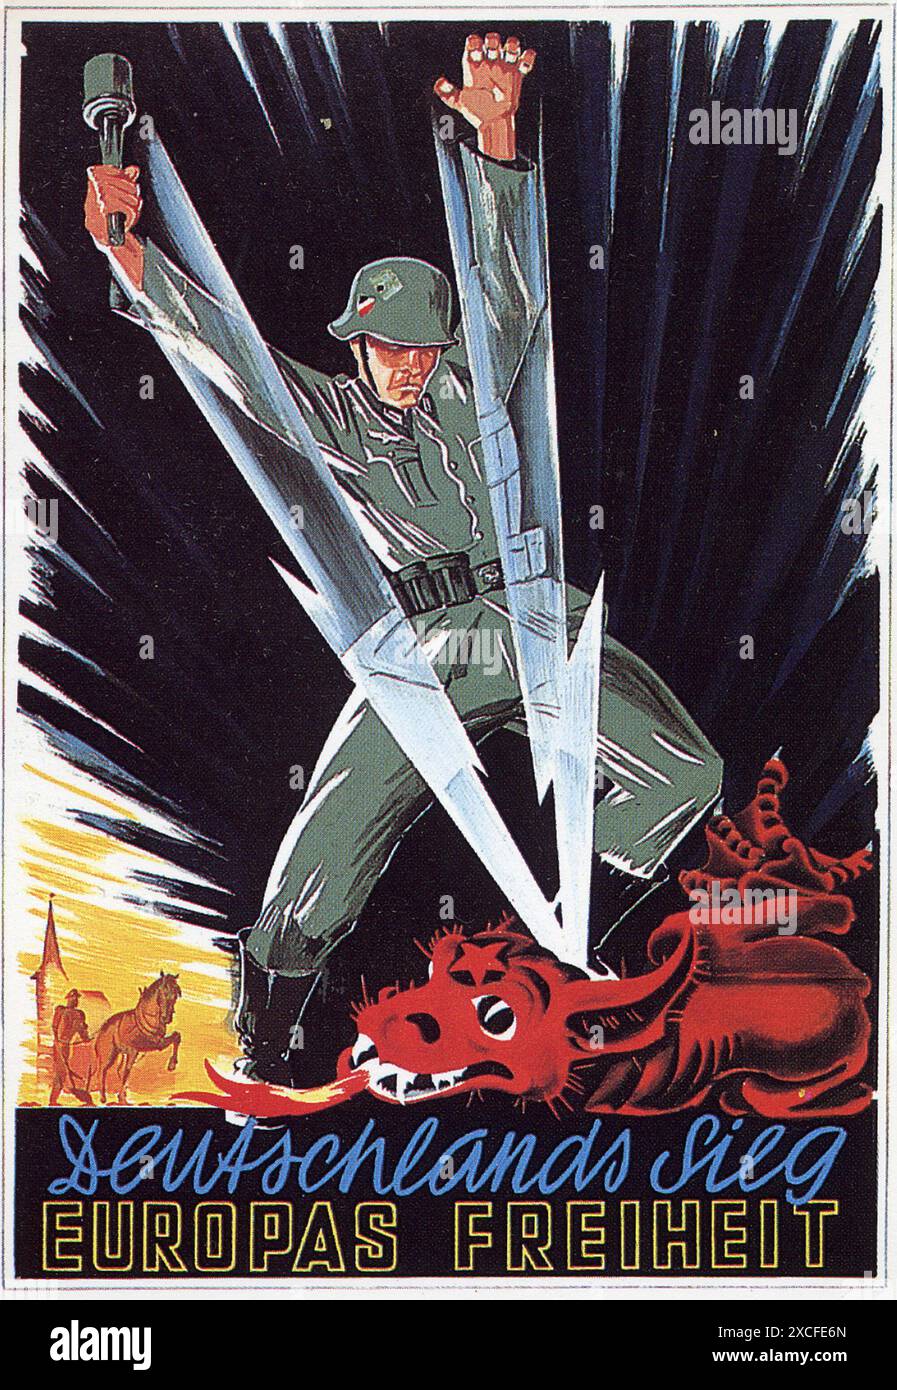 Ein antikommunistisches Propagandaplakat der Nazis aus dem Jahr 1941. Ausgestellt während der Operation Barbarossa (der Invasion der Sowjetunion durch die Nazis) zeigt es einen deutschen Soldaten, der mit zwei Blitzschlägen einen zugeneigten roten Drachen besiegt. Stockfoto